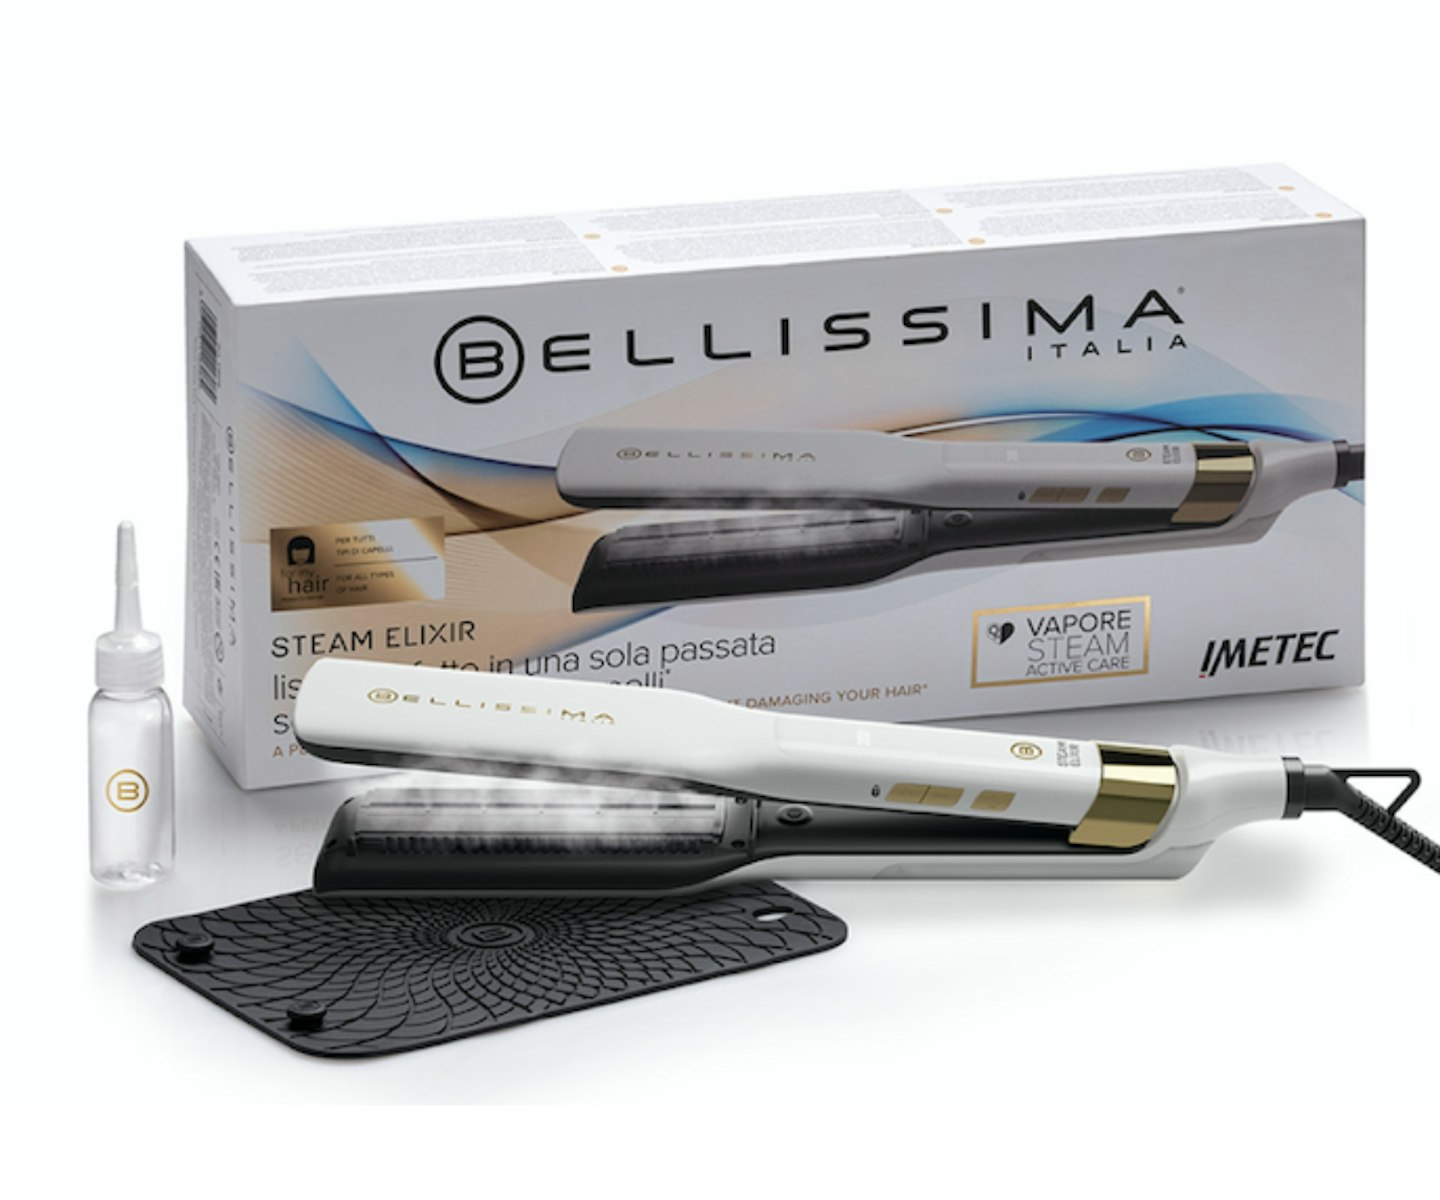 Bellissima Steam Elixir Hair Straightener